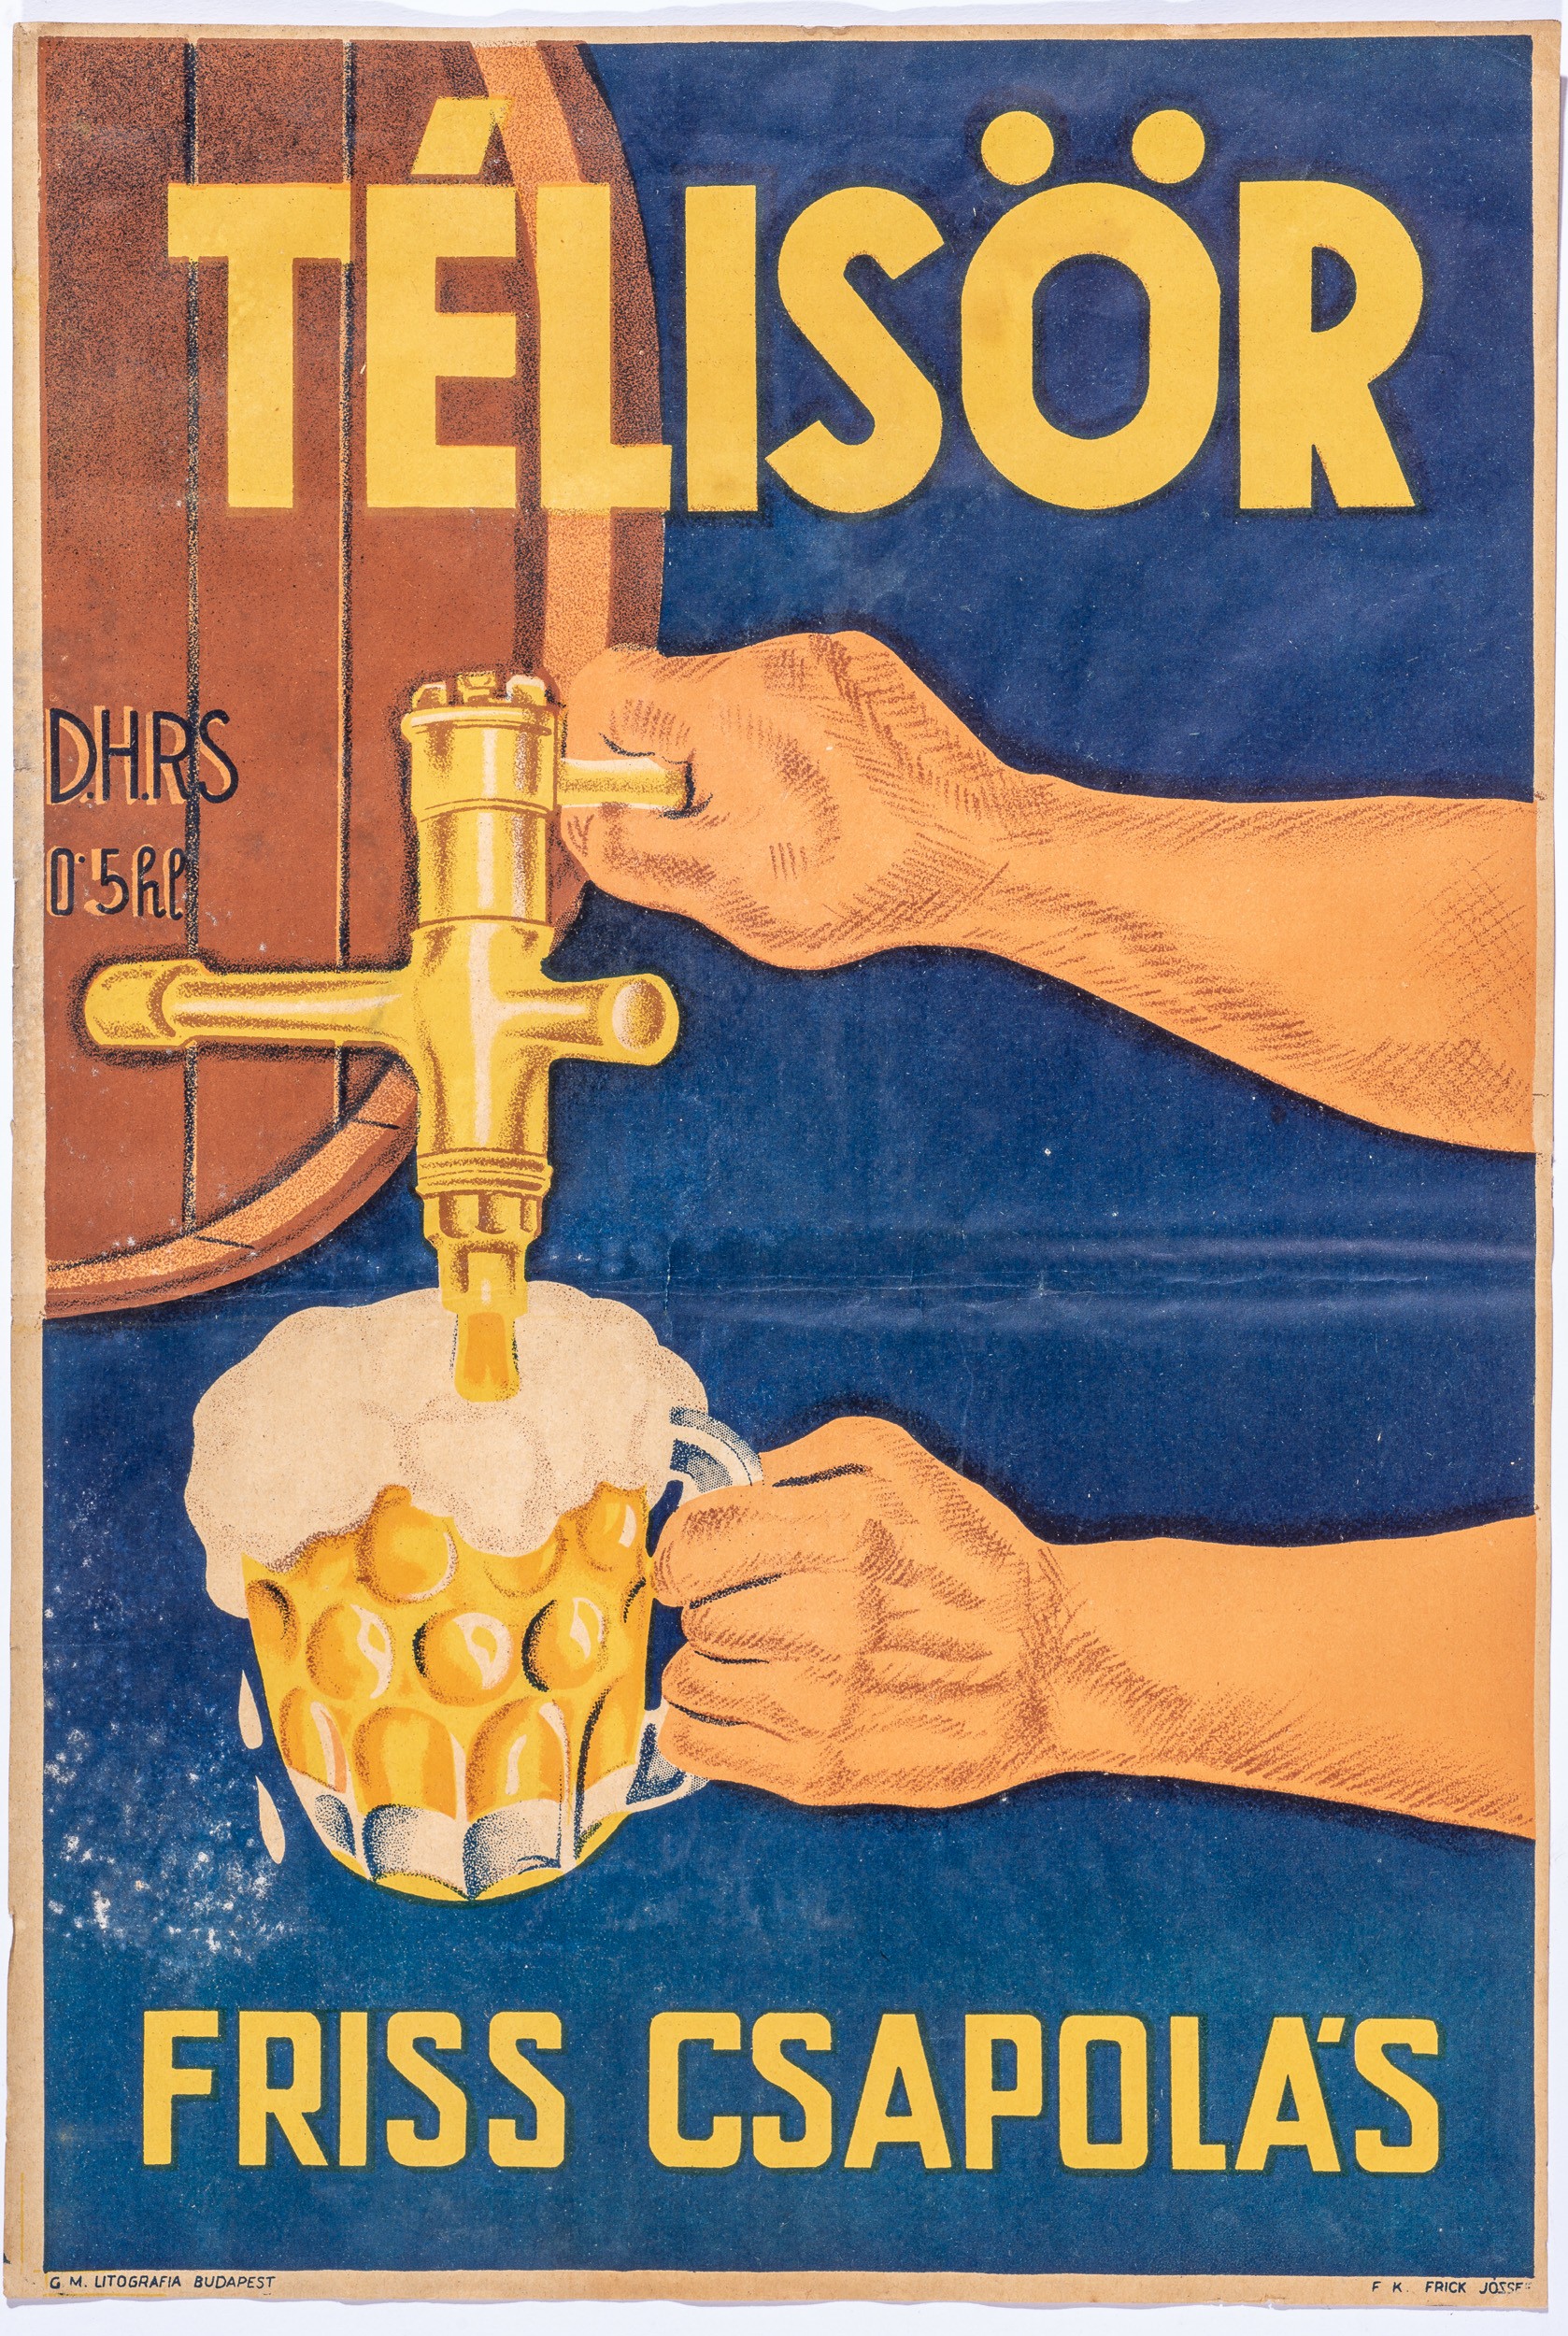 Téli sör, friss csapolás,plakát (Söripari Emléktár - Dreher Sörmúzeum CC BY-NC-SA)